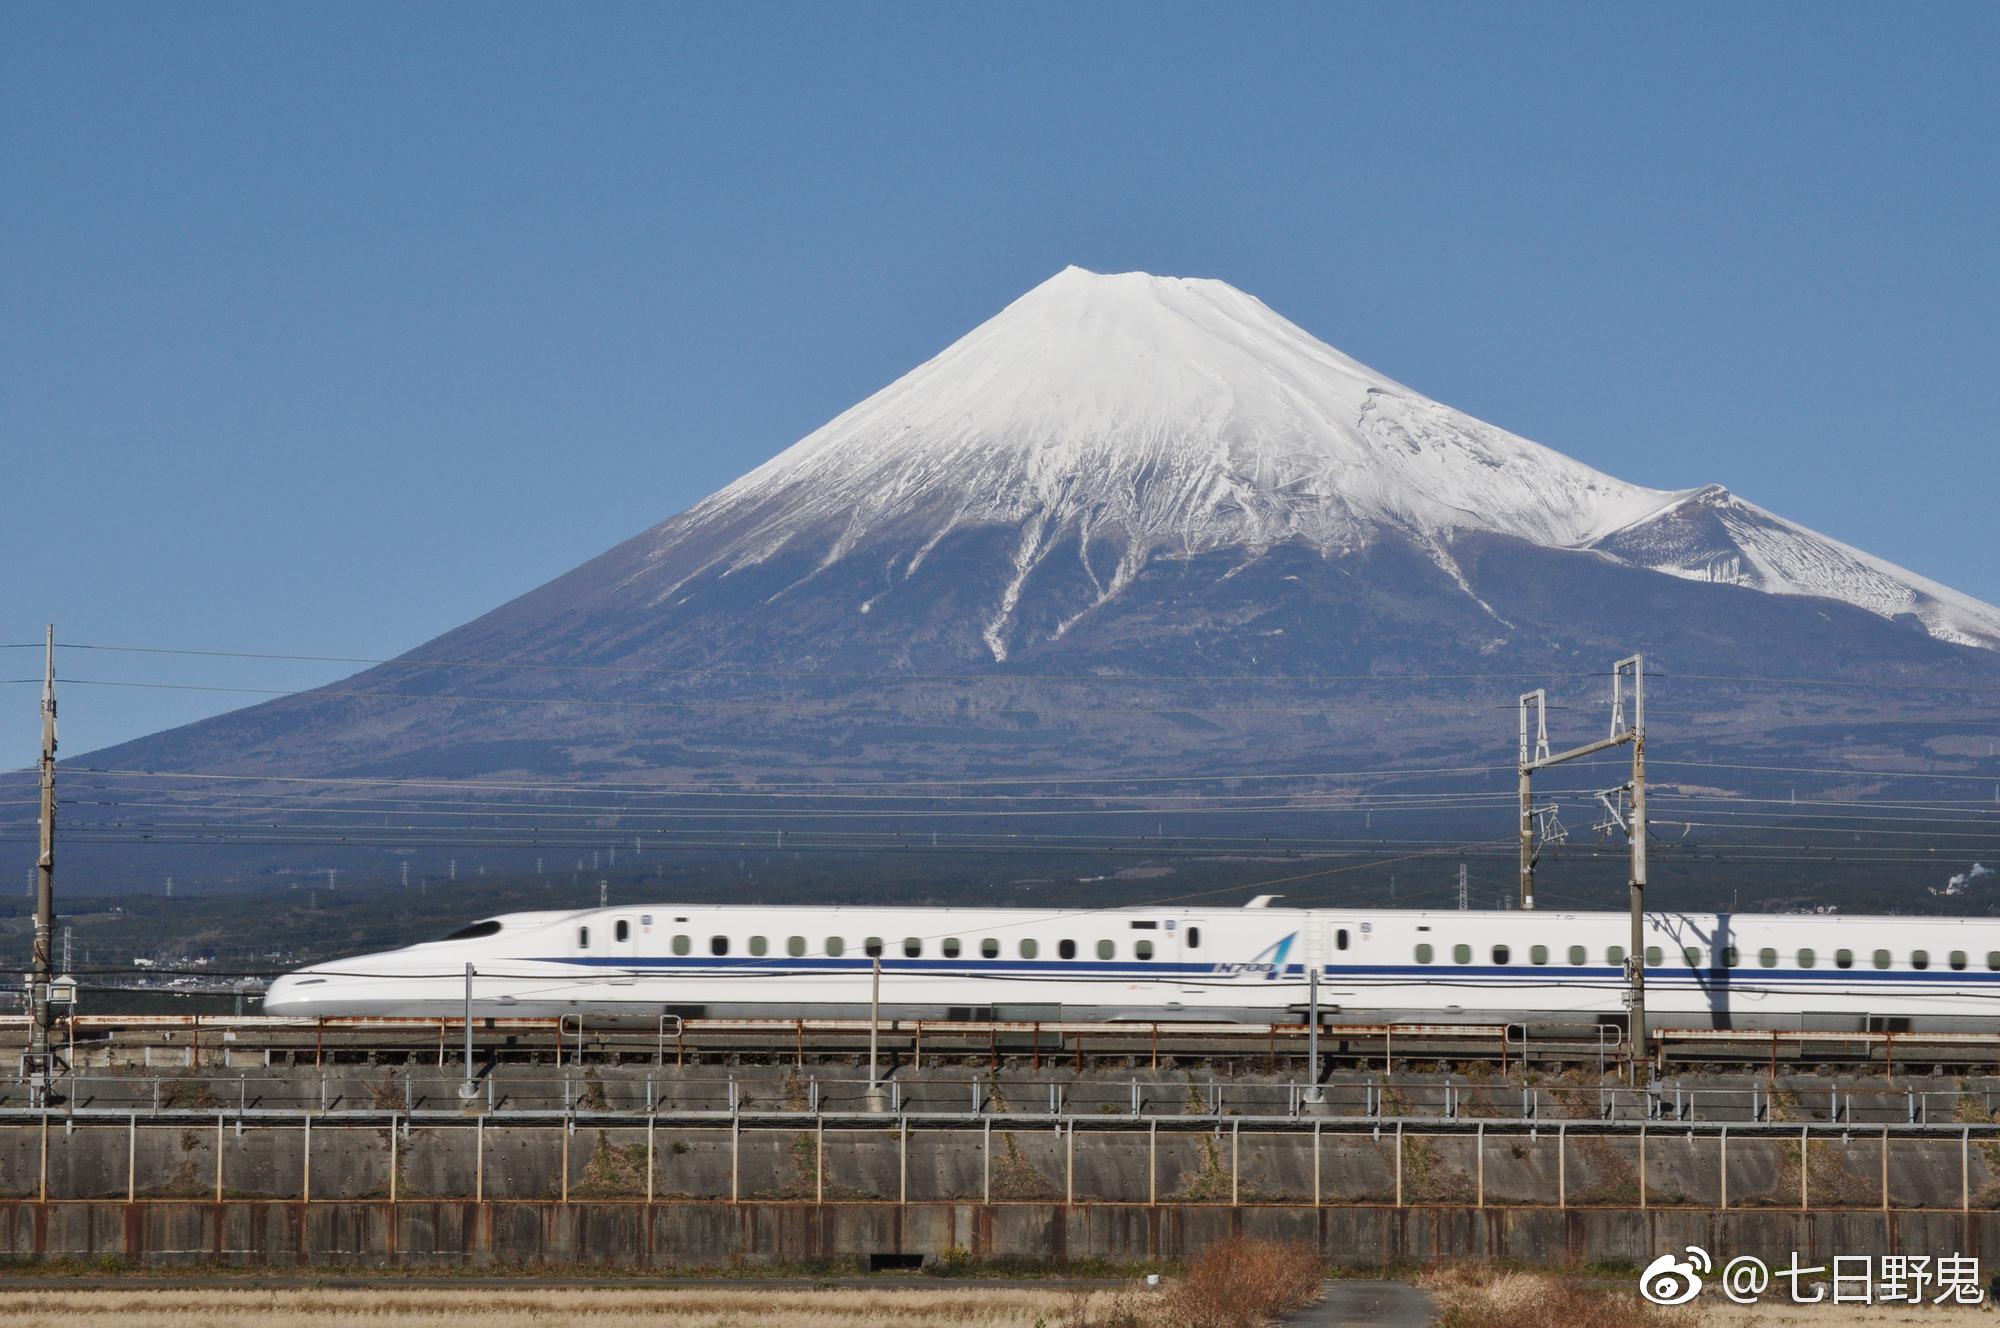 有小伙伴问我以富士山为背景的新干线在哪里能